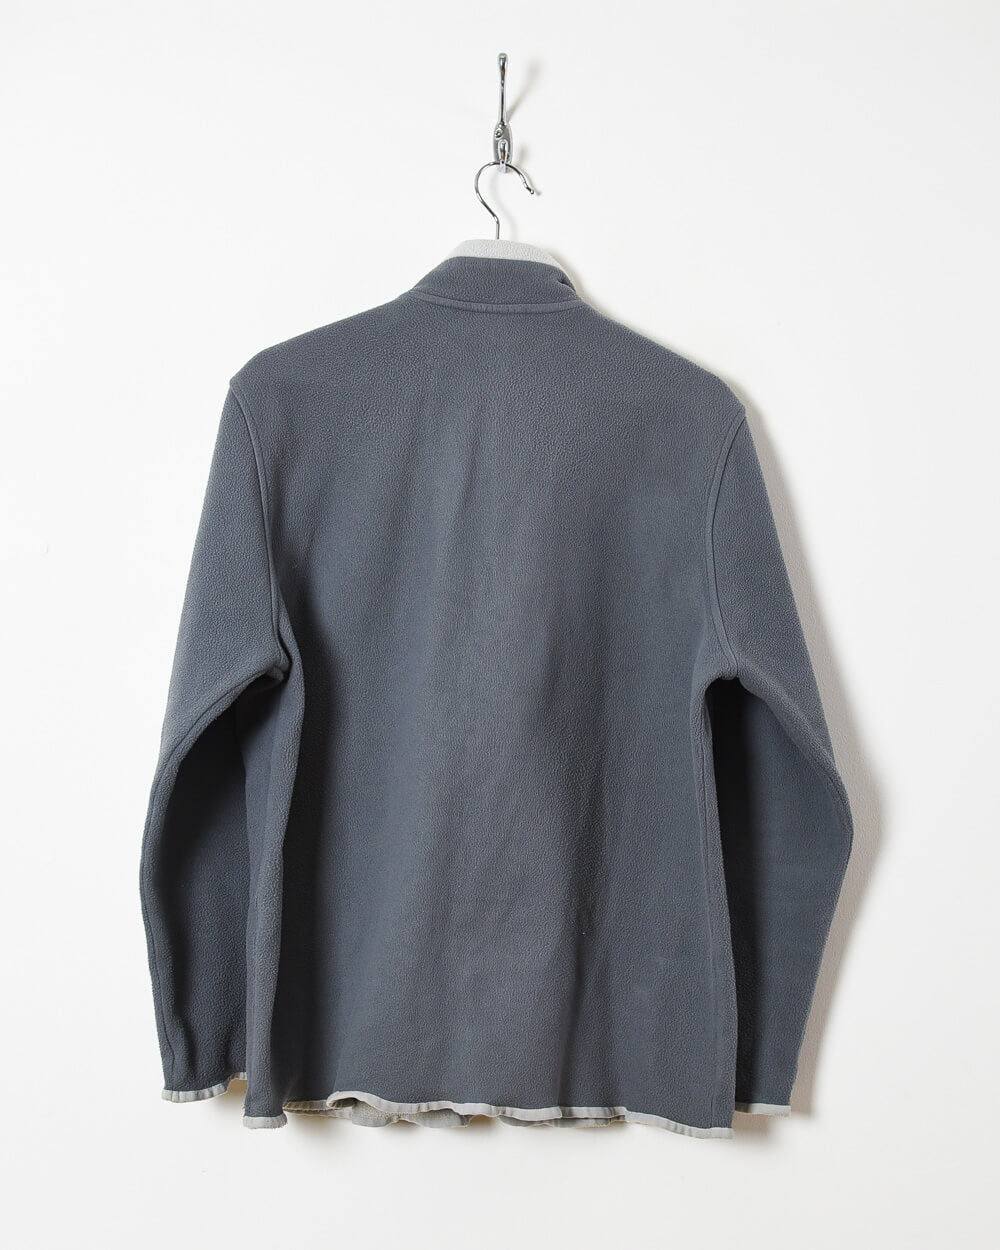 Chemise Lacoste 1/4 Zip Fleece - Medium - Domno Vintage 90s, 80s, 00s Retro and Vintage Clothing 